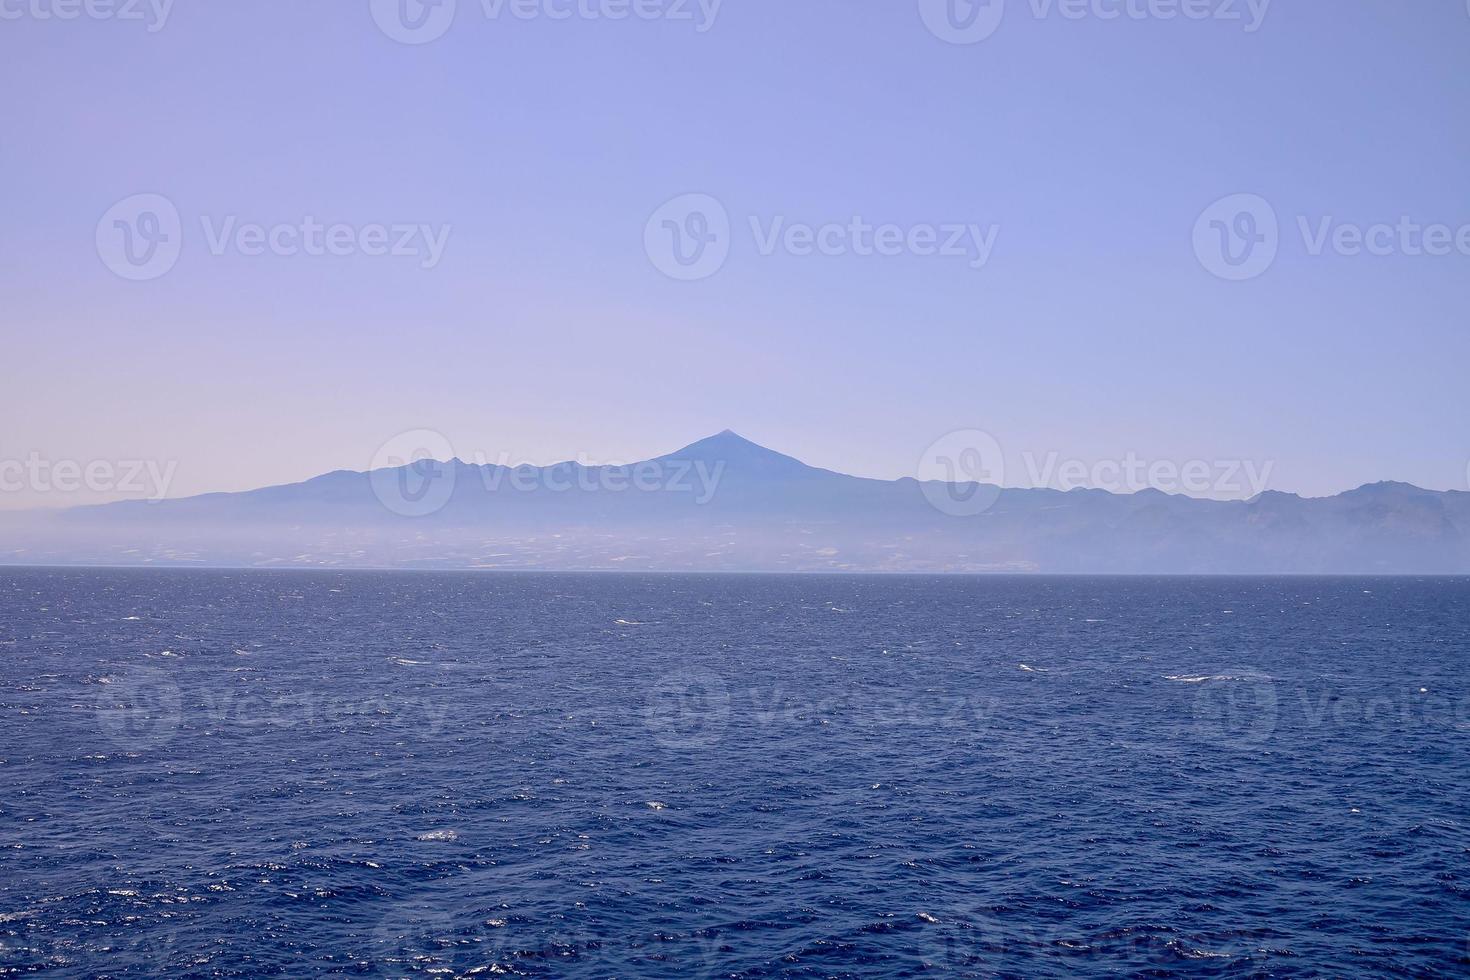 Scenic ocean view photo